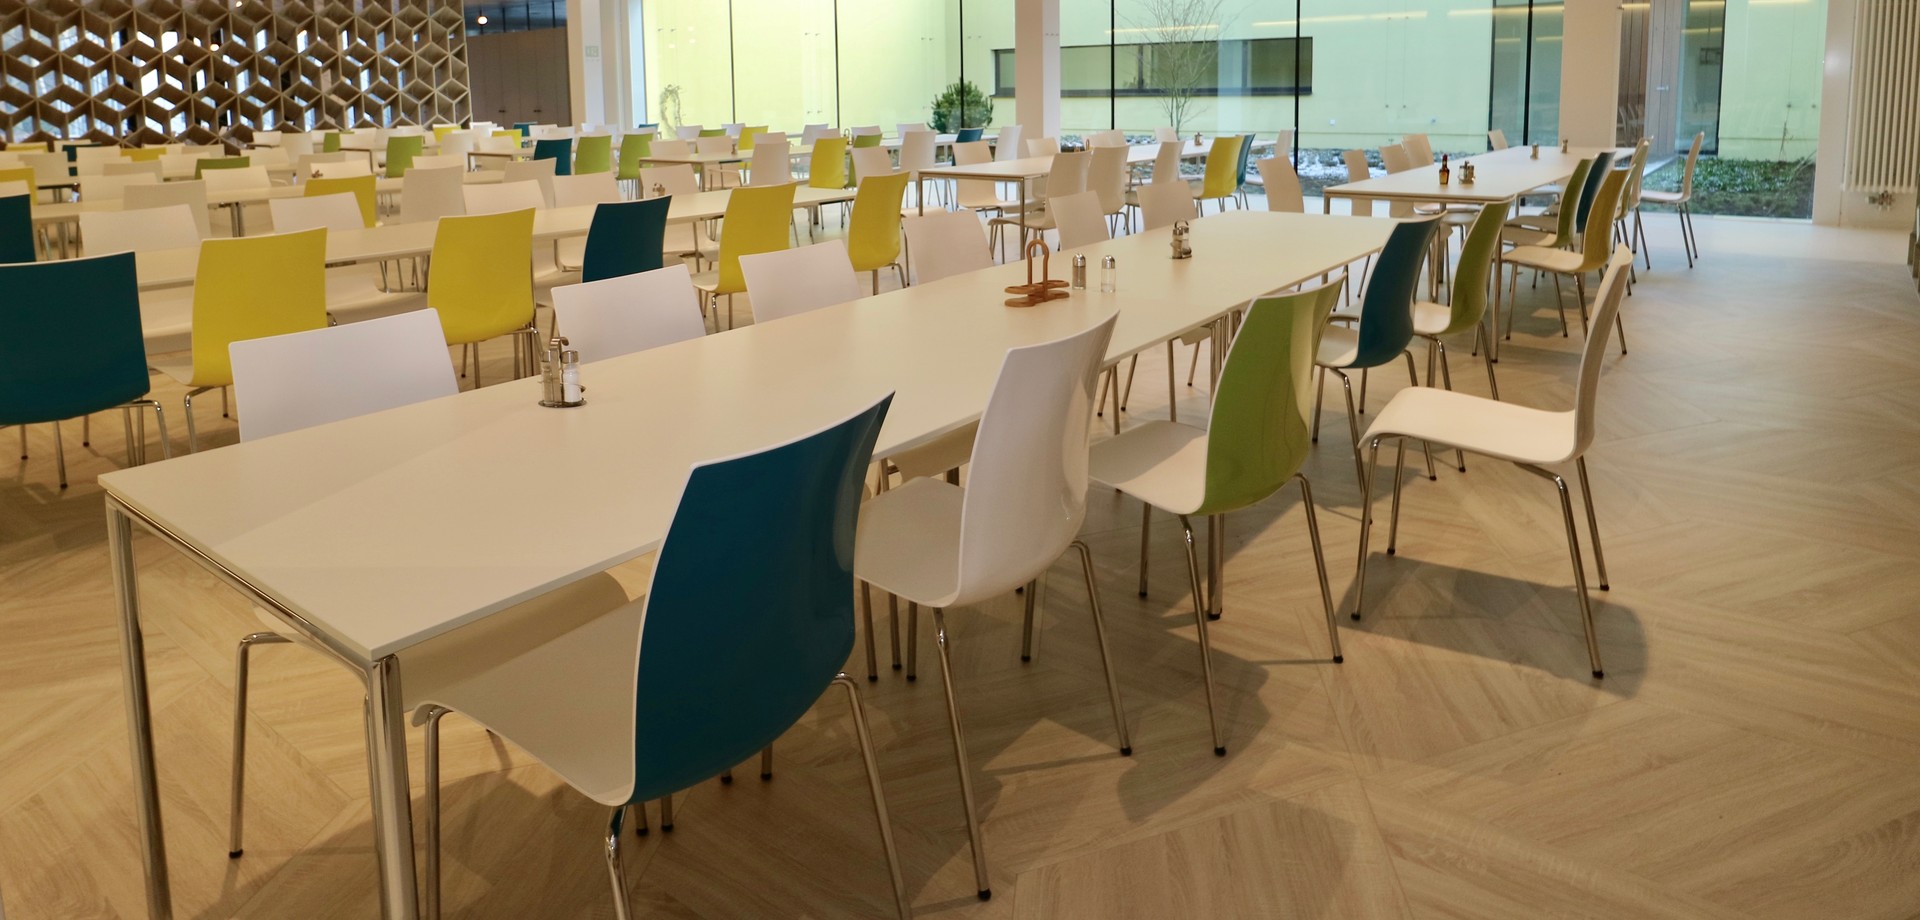 Der Speiseraum des Restaurants. An weißen Tischen sind gelbe und grüne Stühle aufgestellt. Man schaut auf ein großes Fenster zum Innenhof des Raumes